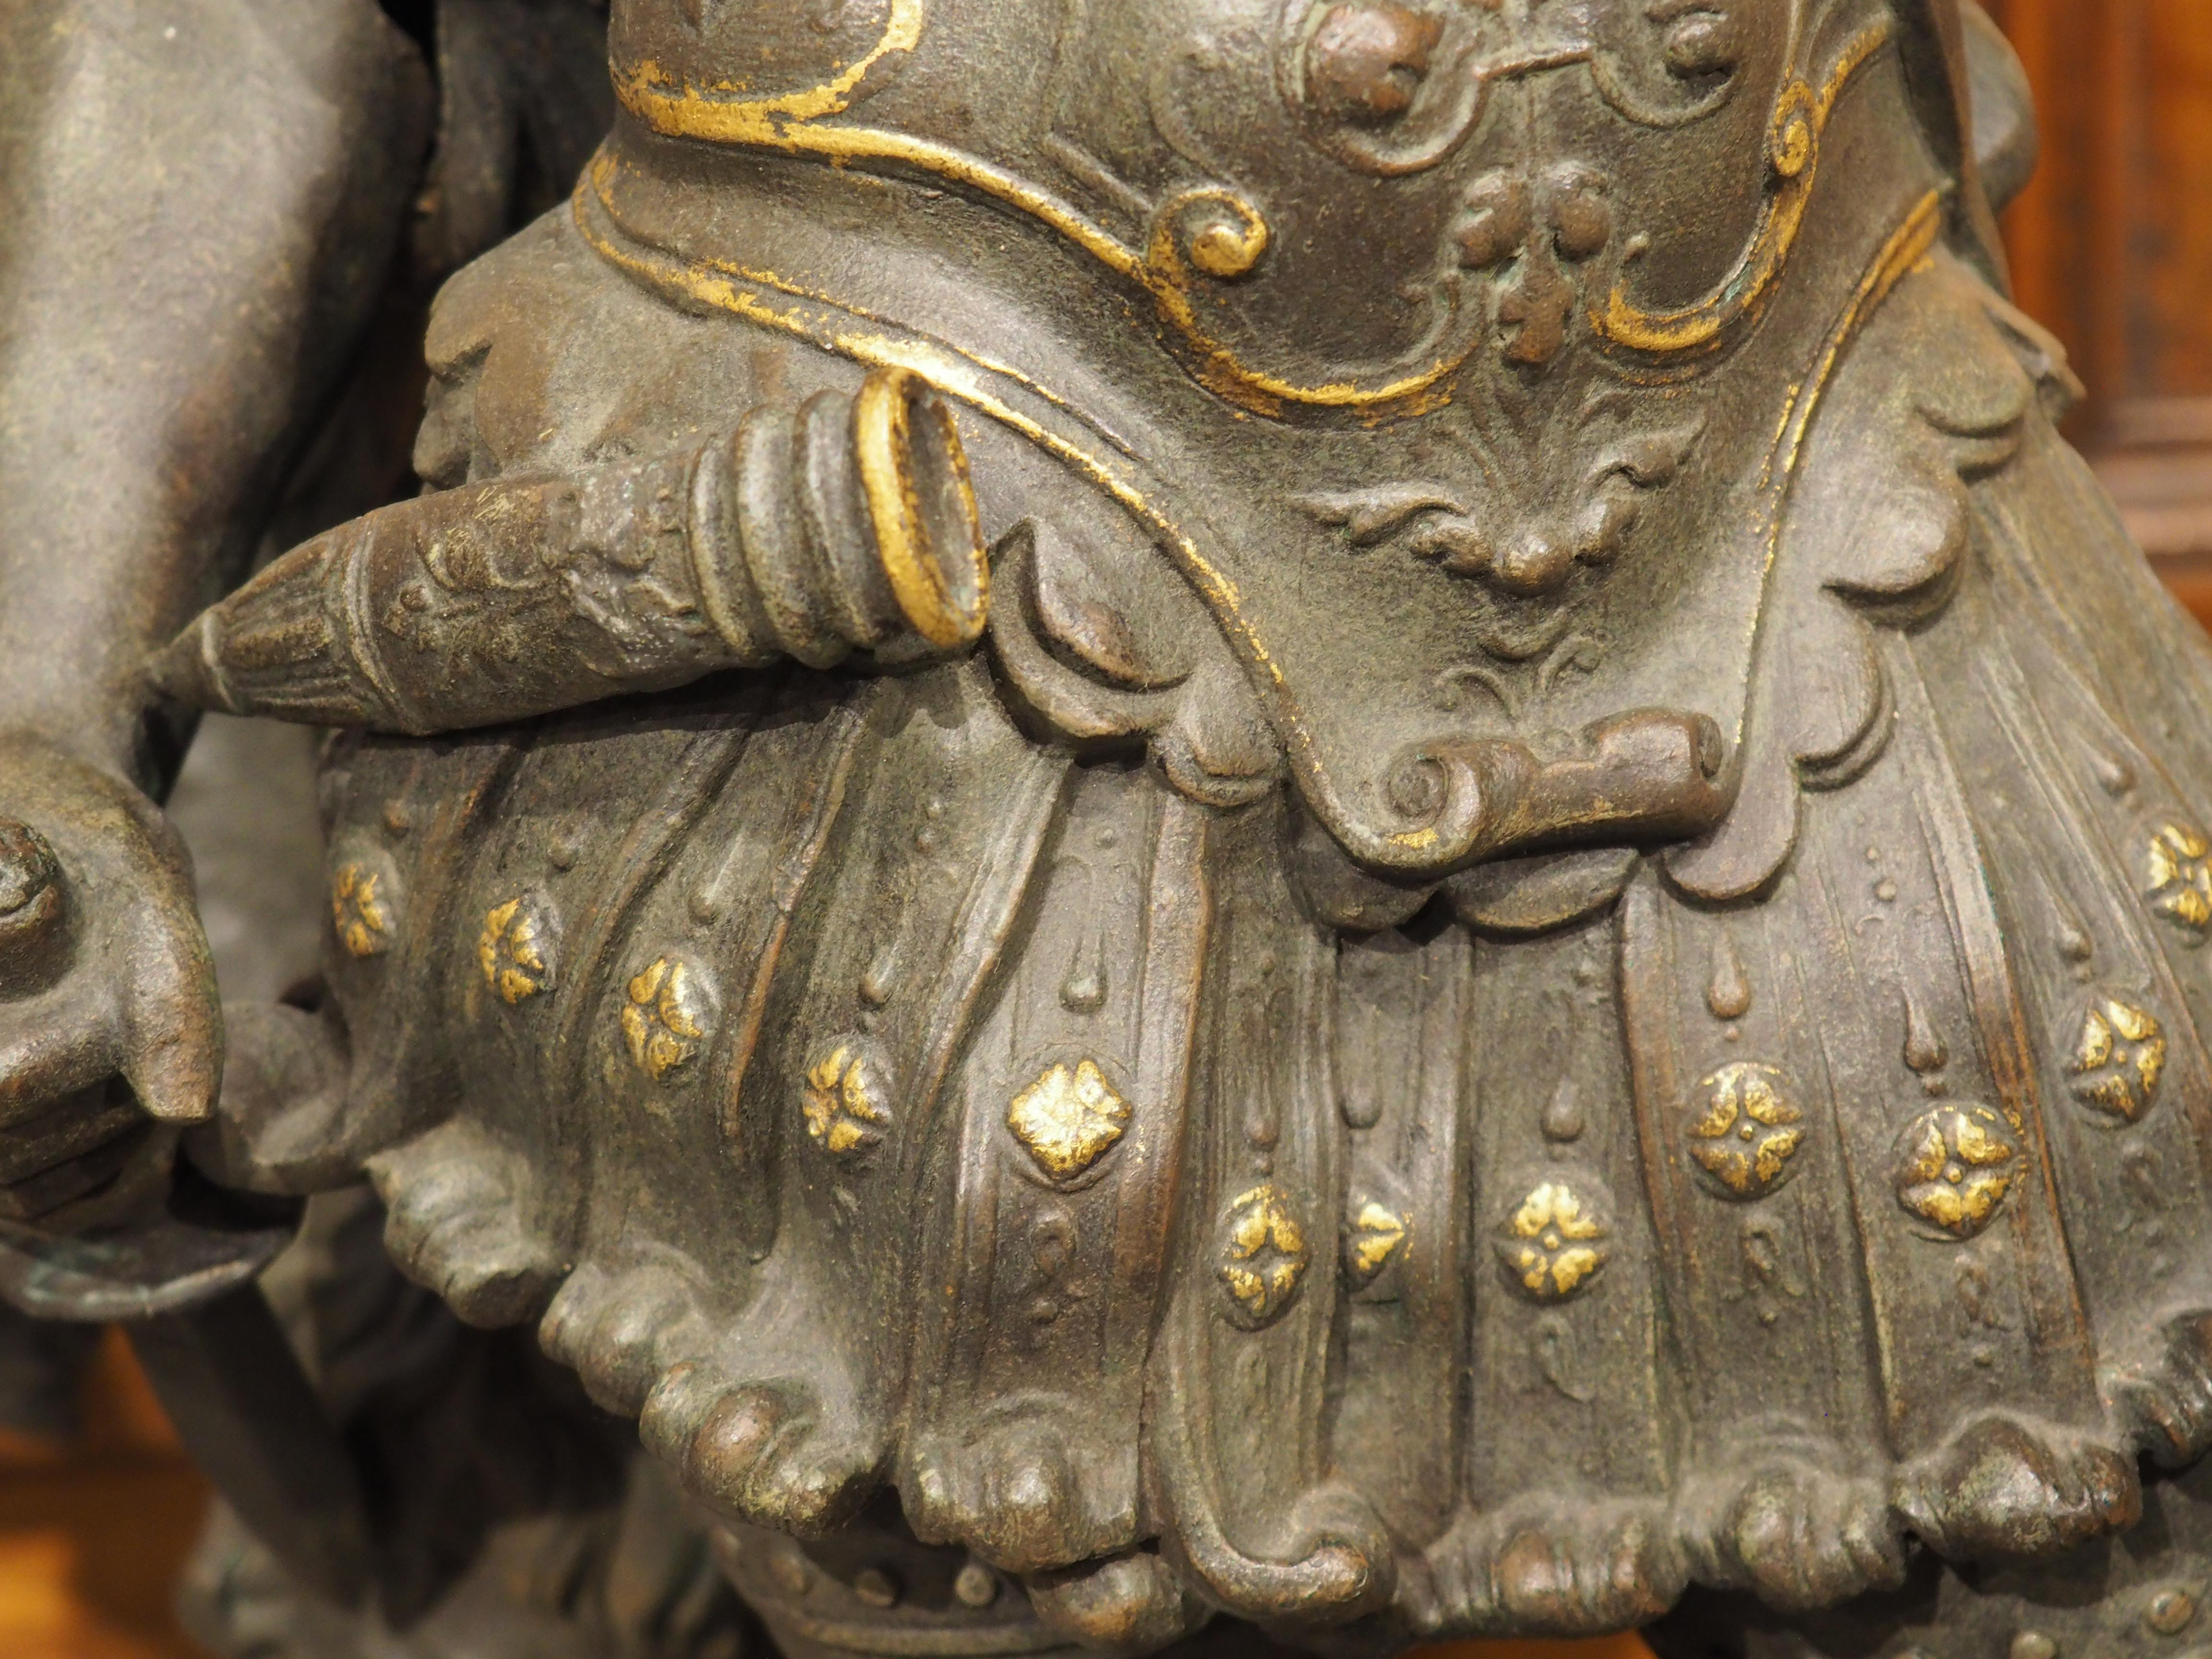 Français Paire de figurines militaires anciennes moulées très détaillées avec accents dorés en vente